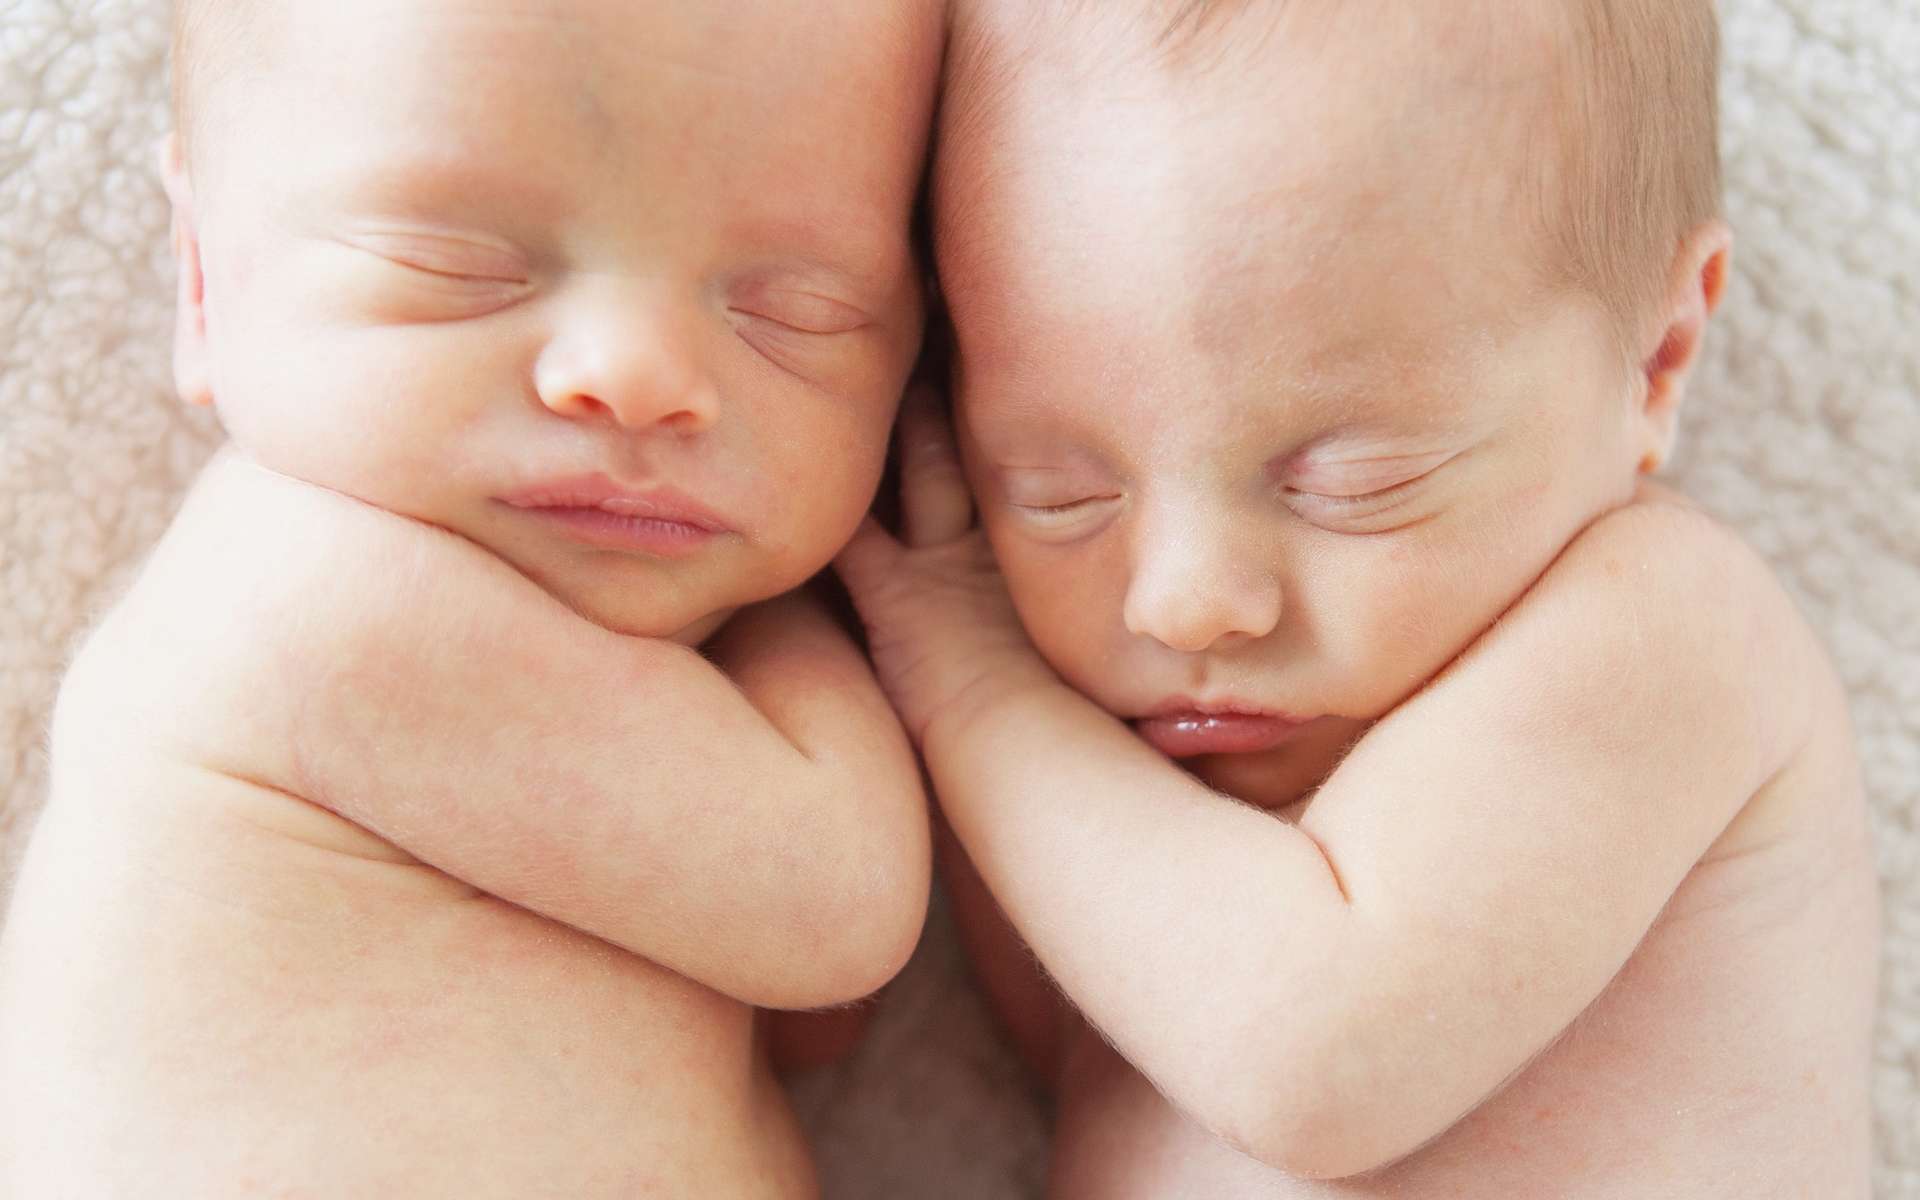 Deux jumeaux peuvent avoir deux pères différents mais la situation est exceptionnelle. Il existerait une dizaine de cas de ce genre dans le monde. © Julie Campbell, Shutterstock